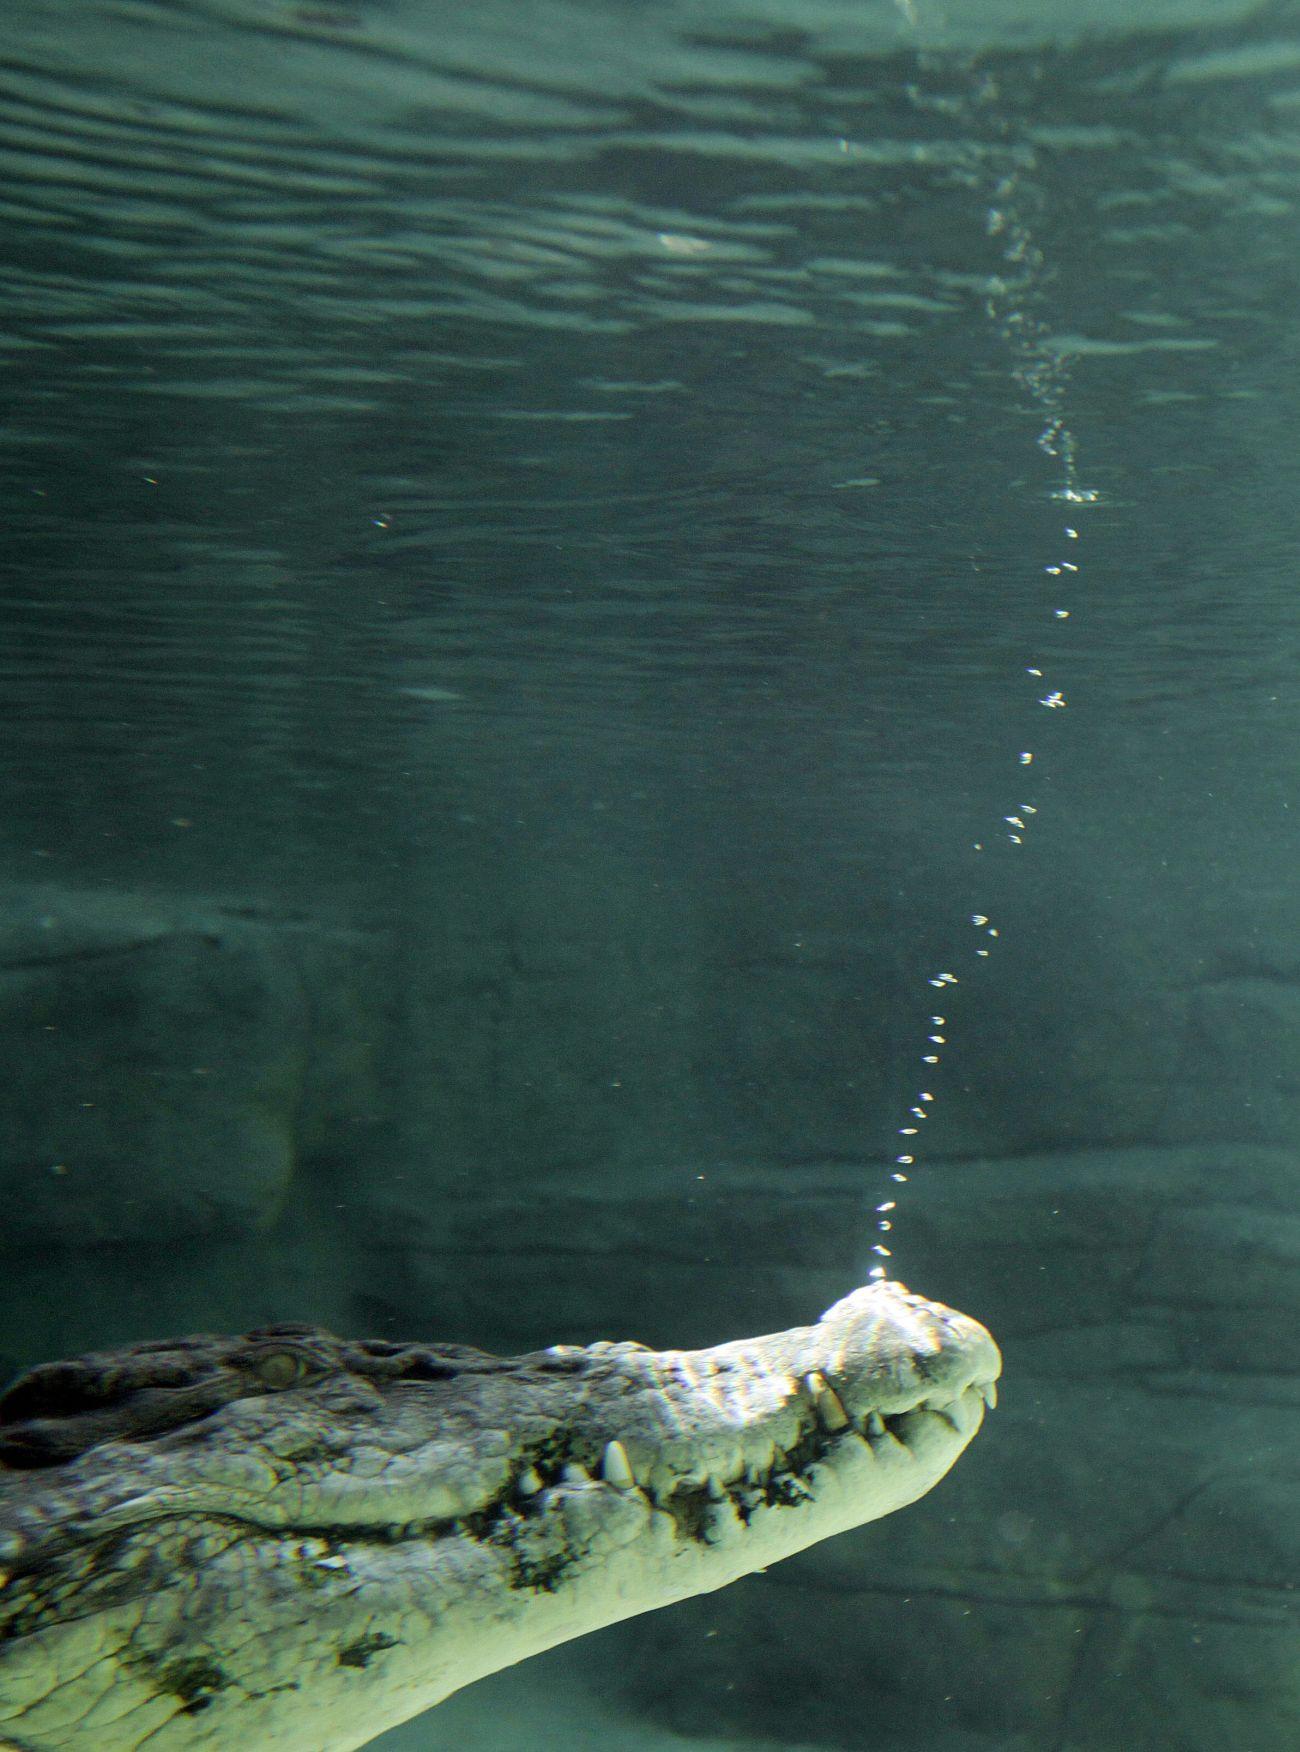 Rex, a Sydney-i akvárium öt méter hosszú, 700 kilogrammos sósvízi krokodilja